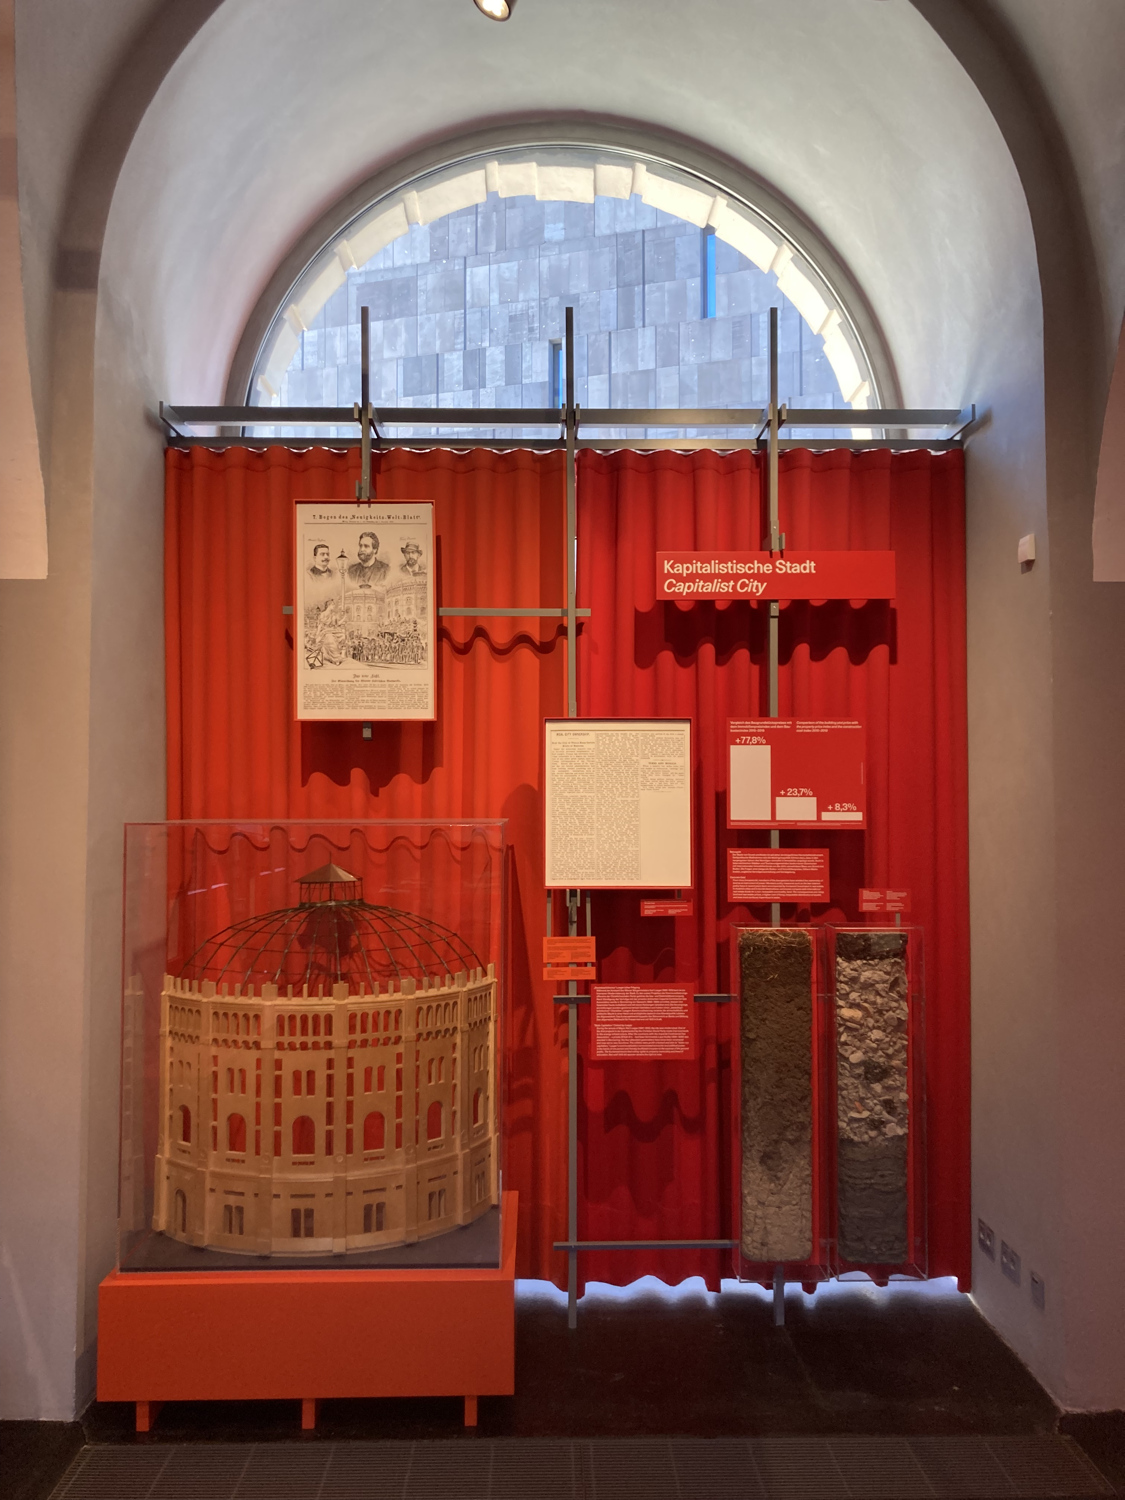 Ausstellungsdisplay in einer Nische mit halbkreisförmigem Fenster darüber, vor einem roten Vorhang ist ein Architekturmodell eines Wiener Gasometers und daneben ein Vergleich von Bodenprofilen zu sehen